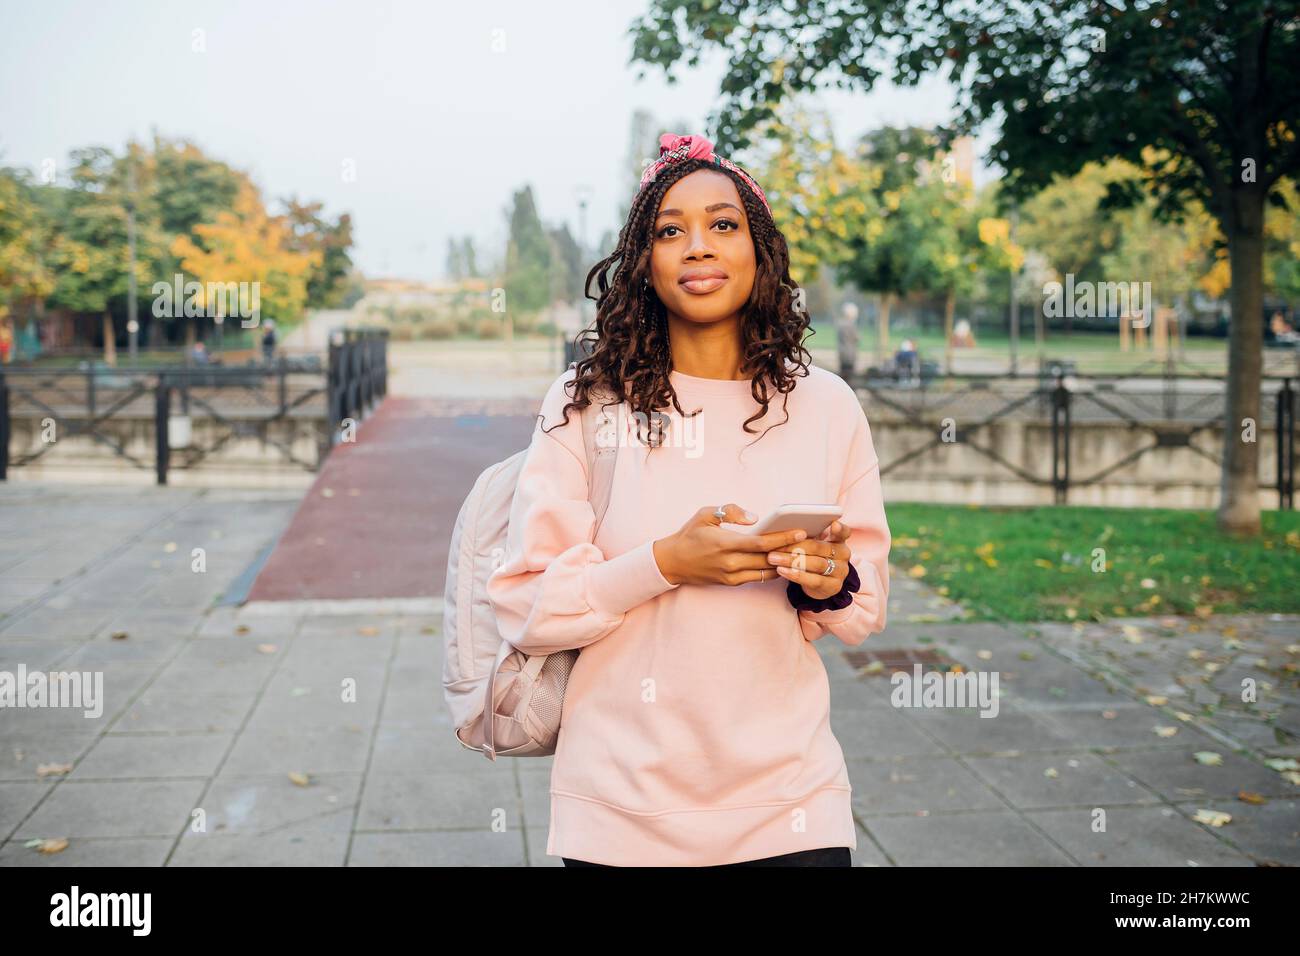 Junge schwarze Frau genießt Stadtleben im Freien mit dem Smartphone - Mailand, Lombardei, Italien - Surfen, ... Stockfoto